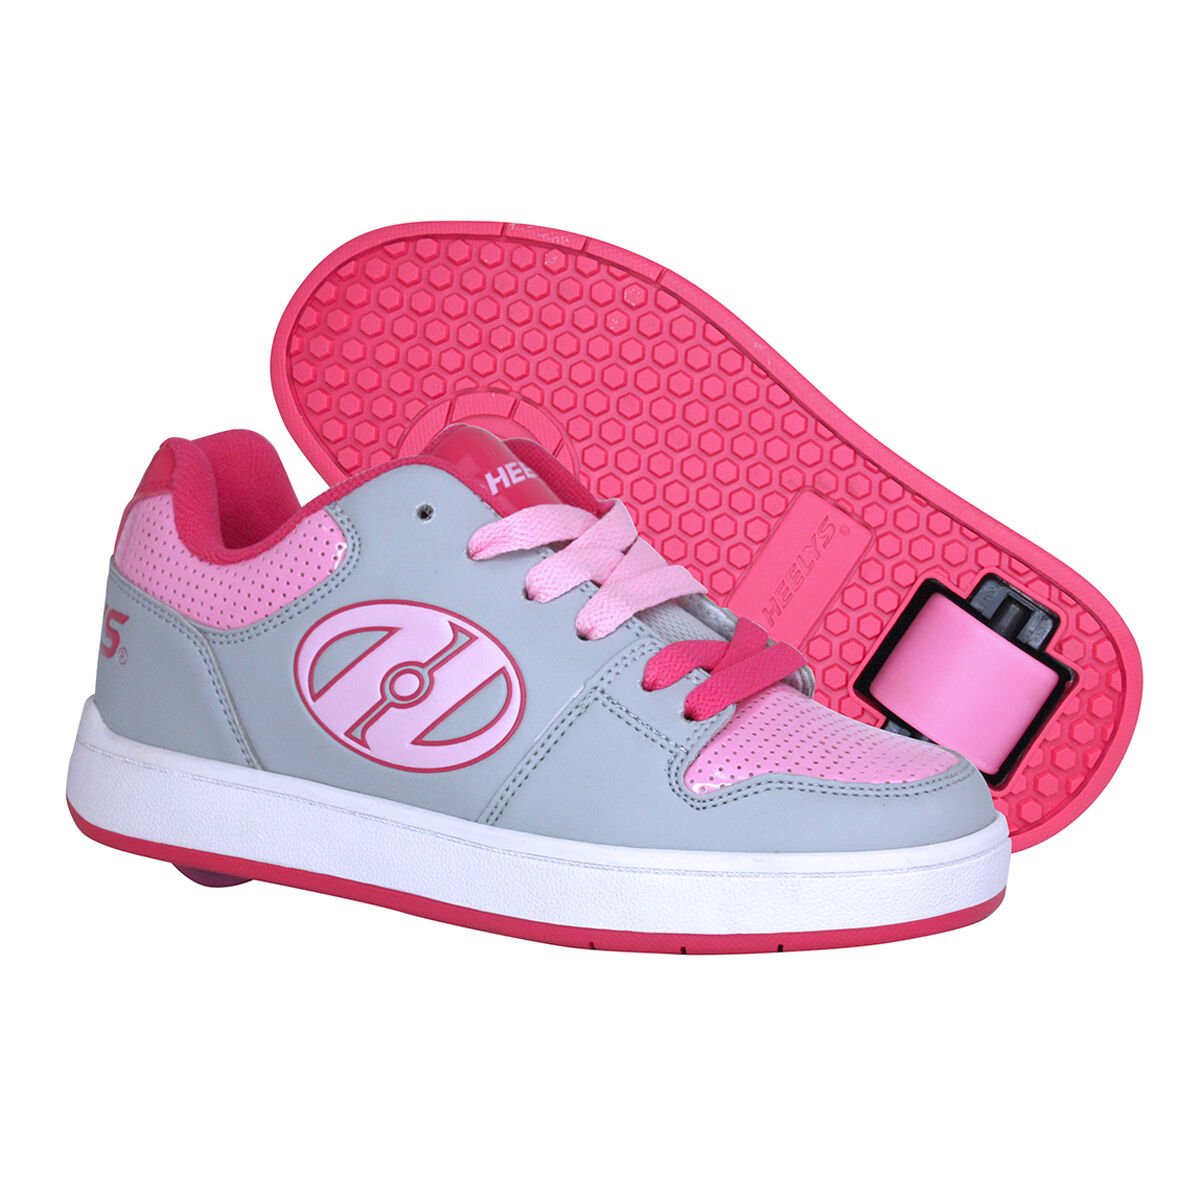 Heelys Cement 1 Shoes Pink US 6 | Rebel 